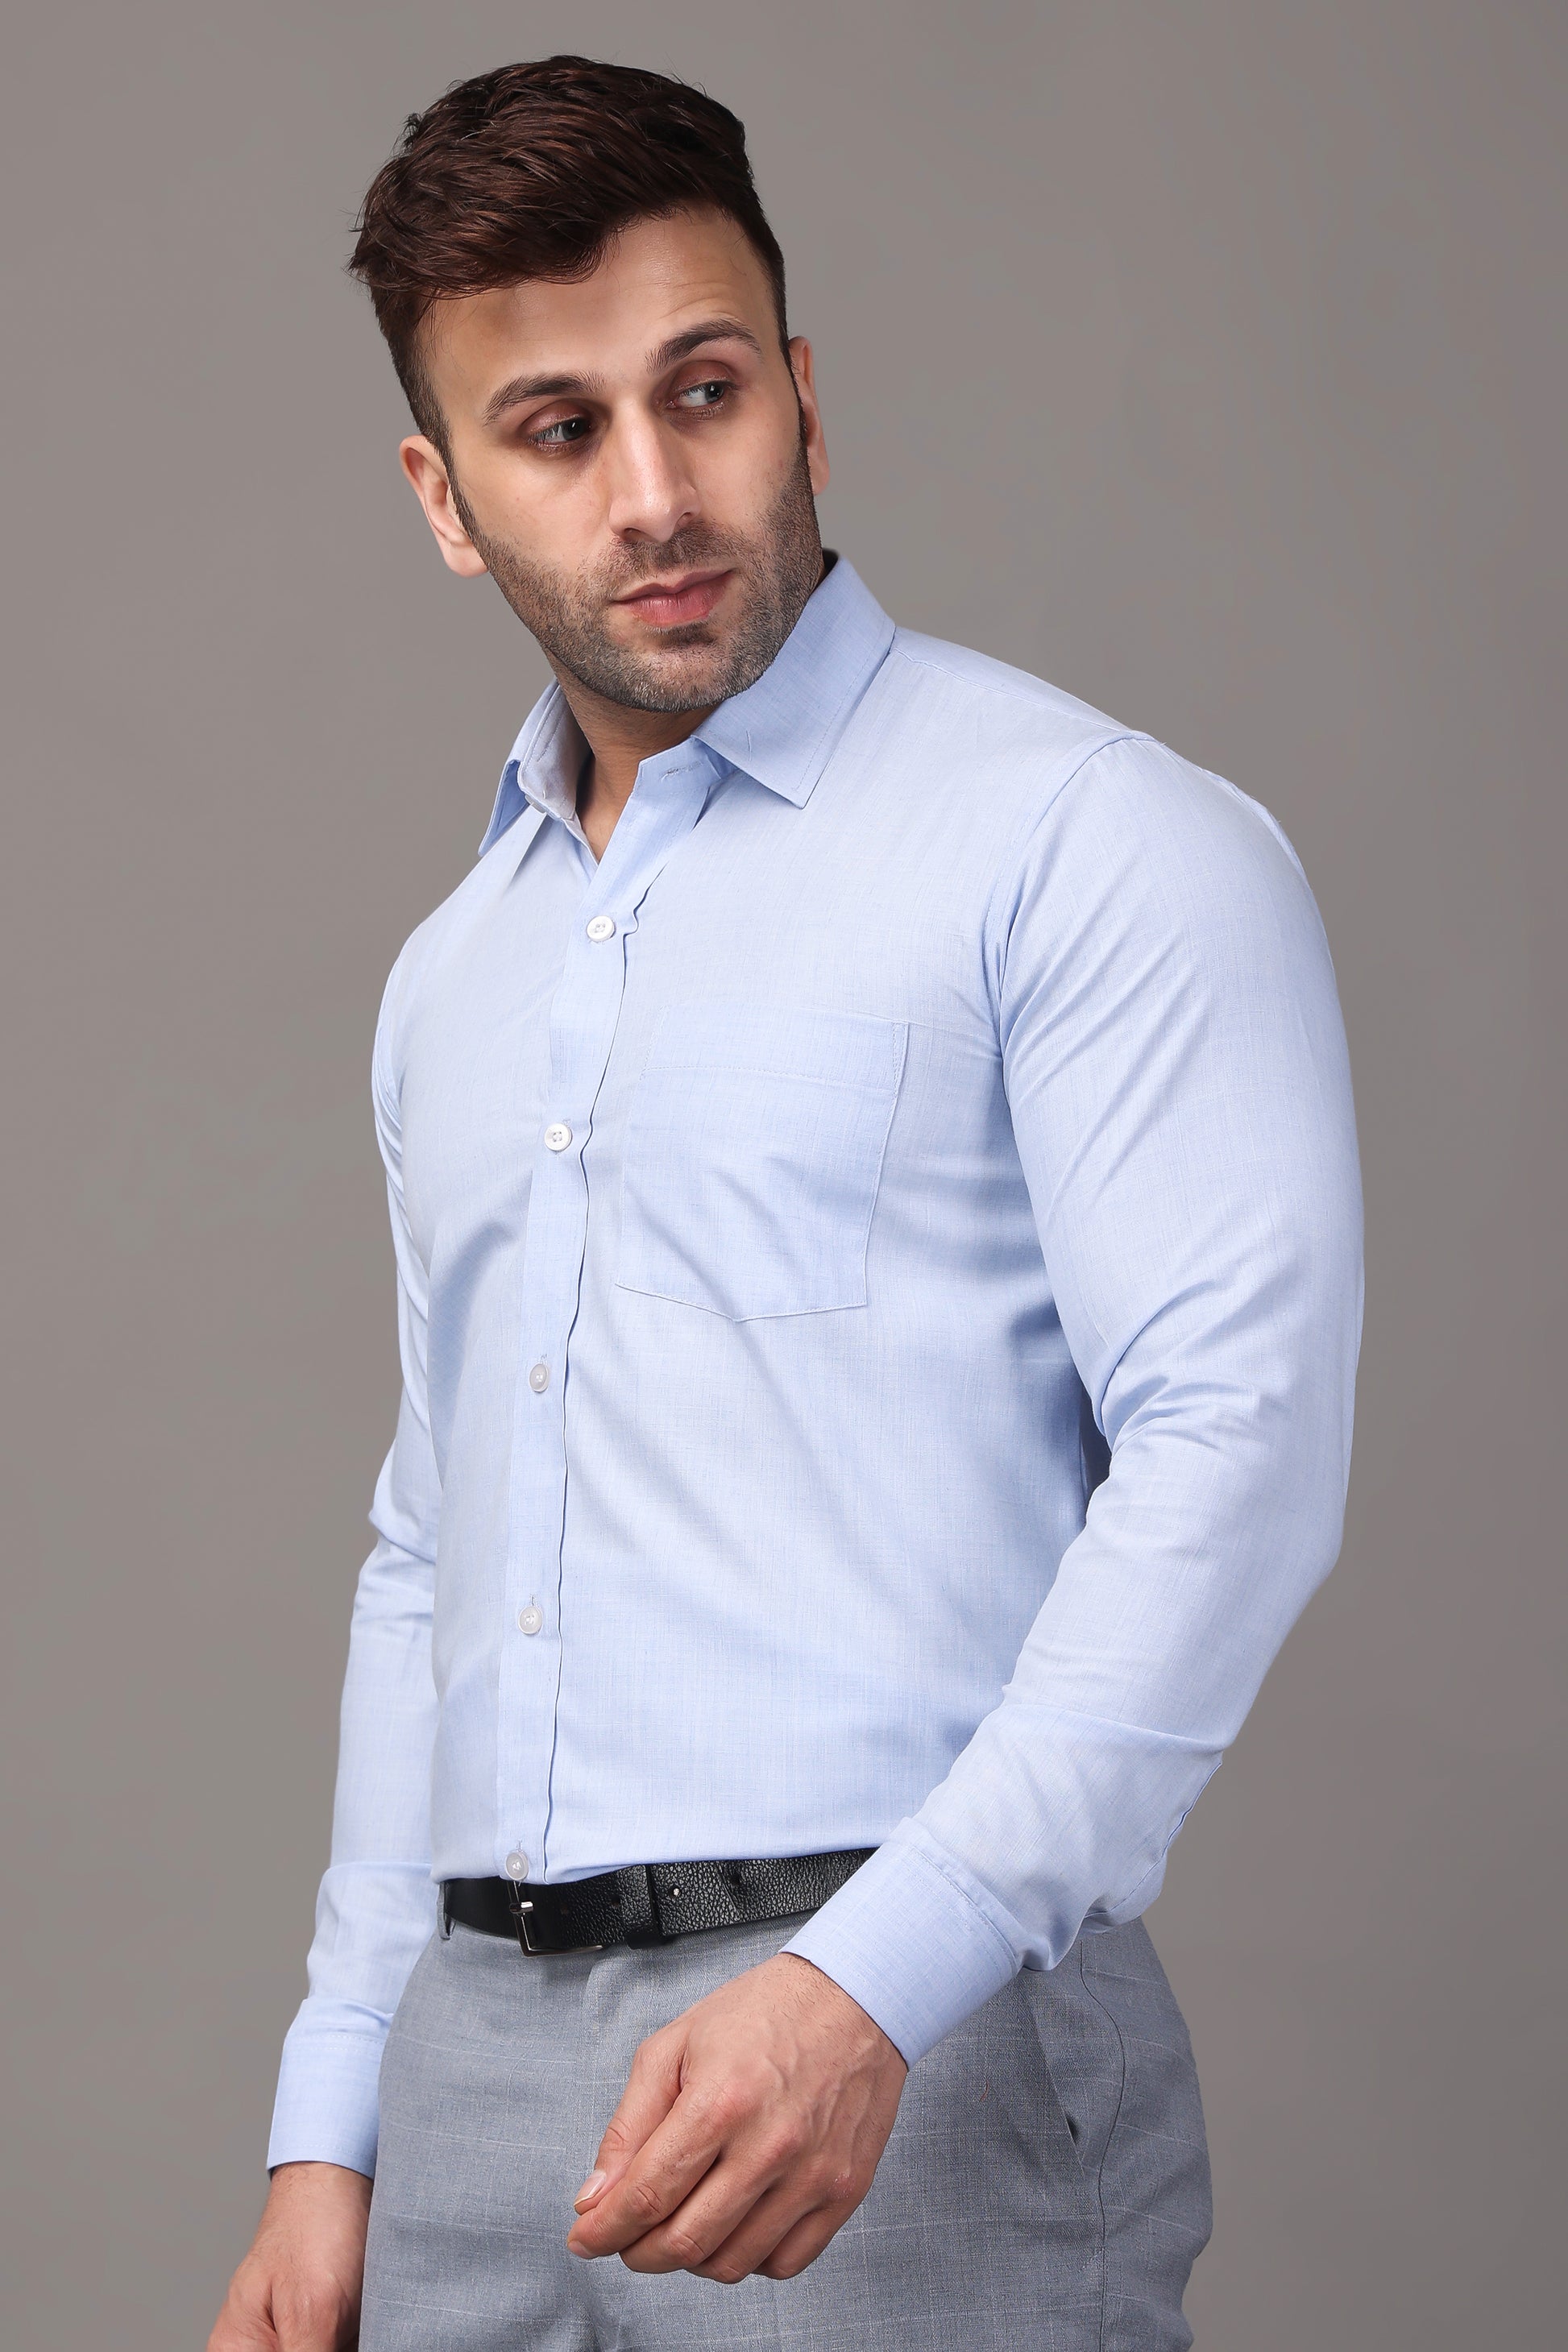 Blue Plus Size Shirts For Men